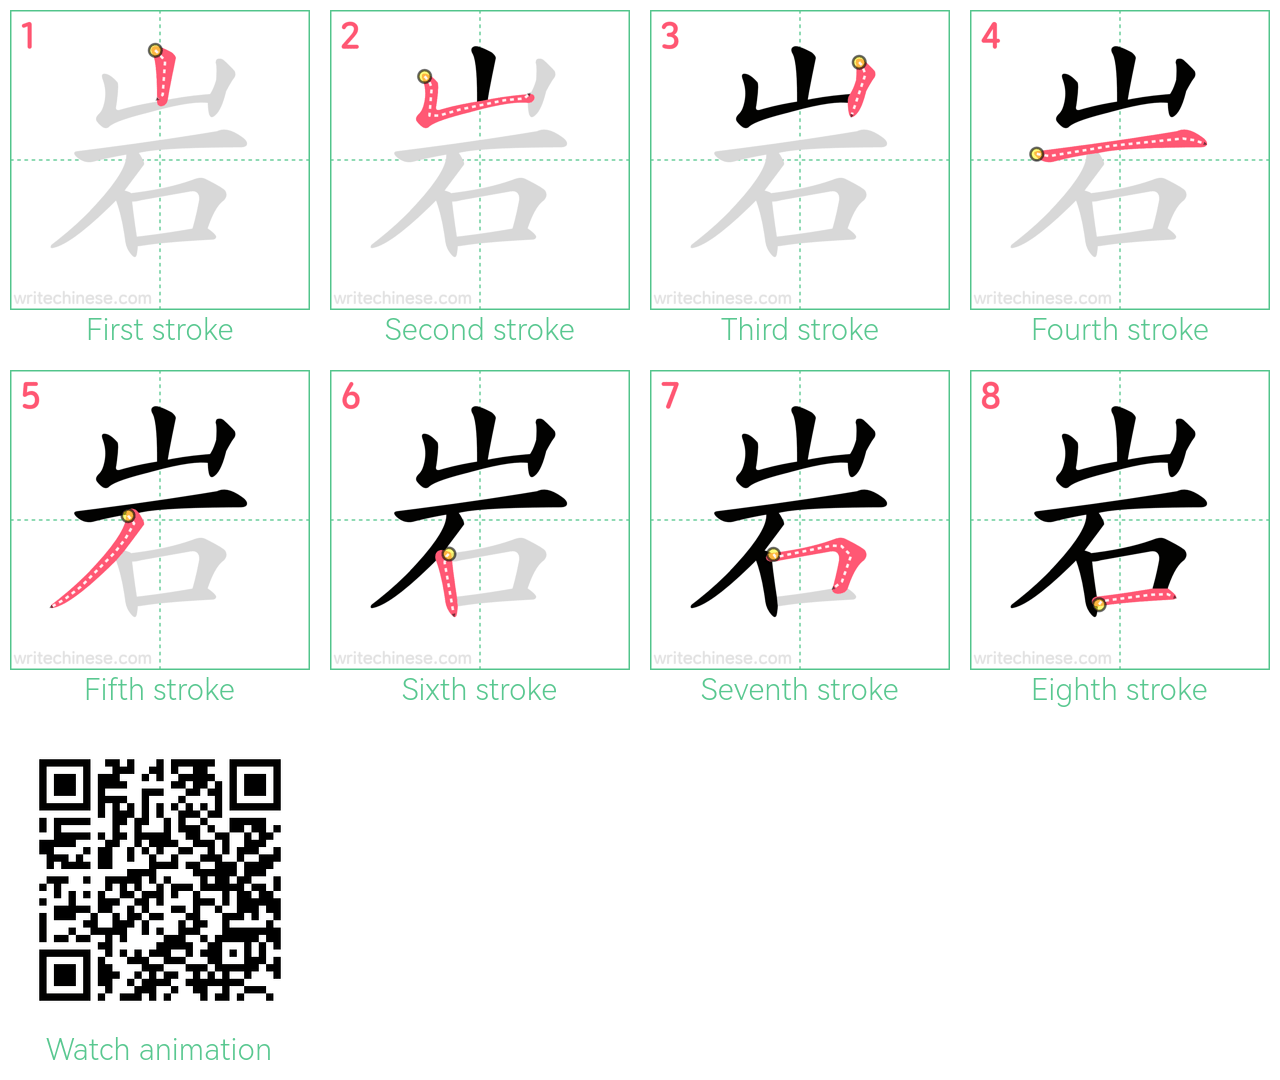 岩 step-by-step stroke order diagrams